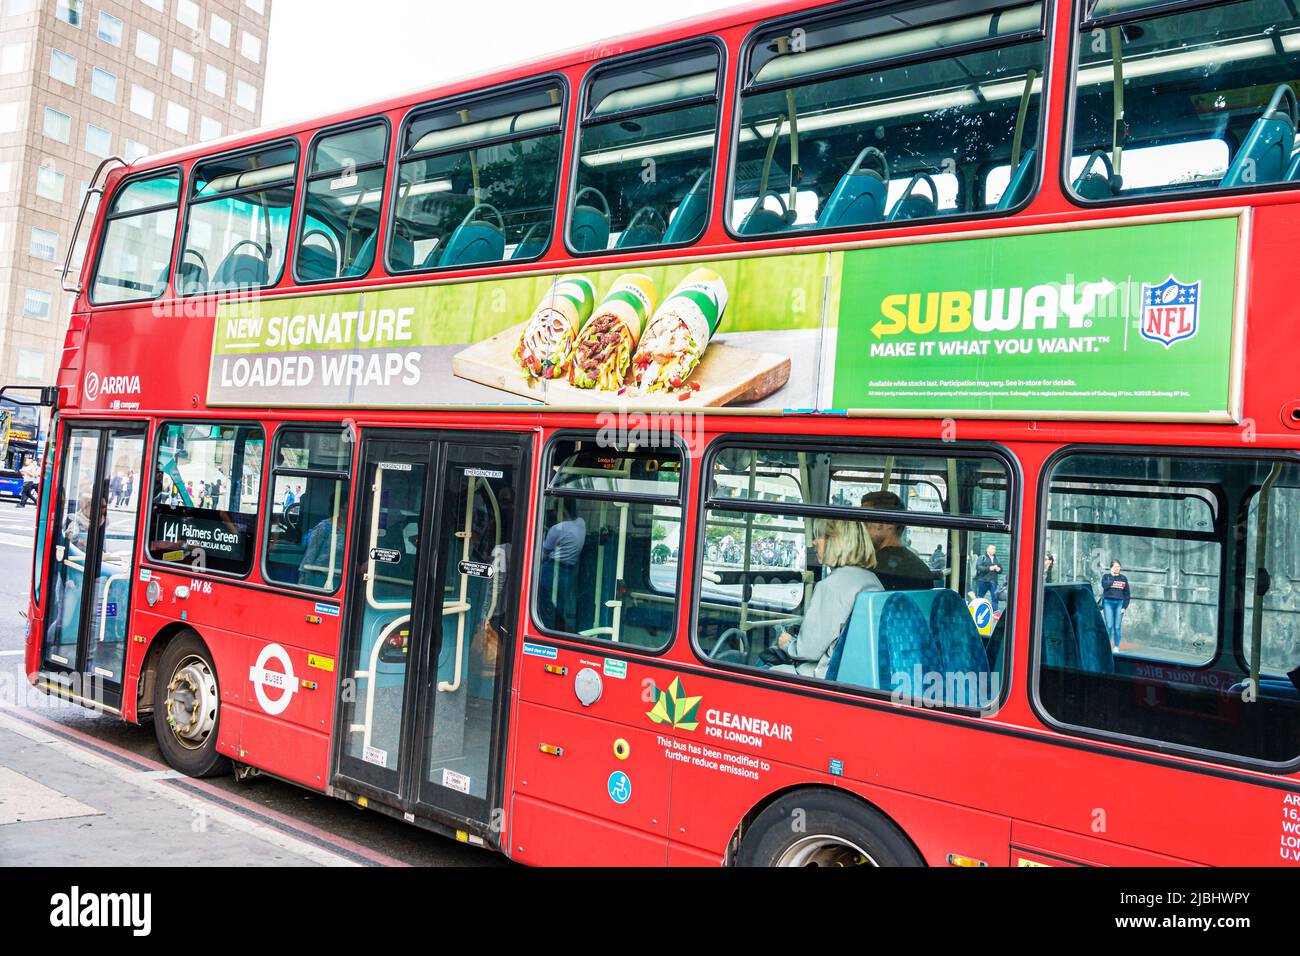 Londres Angleterre, South Bank Southwark, Subway sandwich shop, publicité rouge bus à deux étages transport en commun Banque D'Images